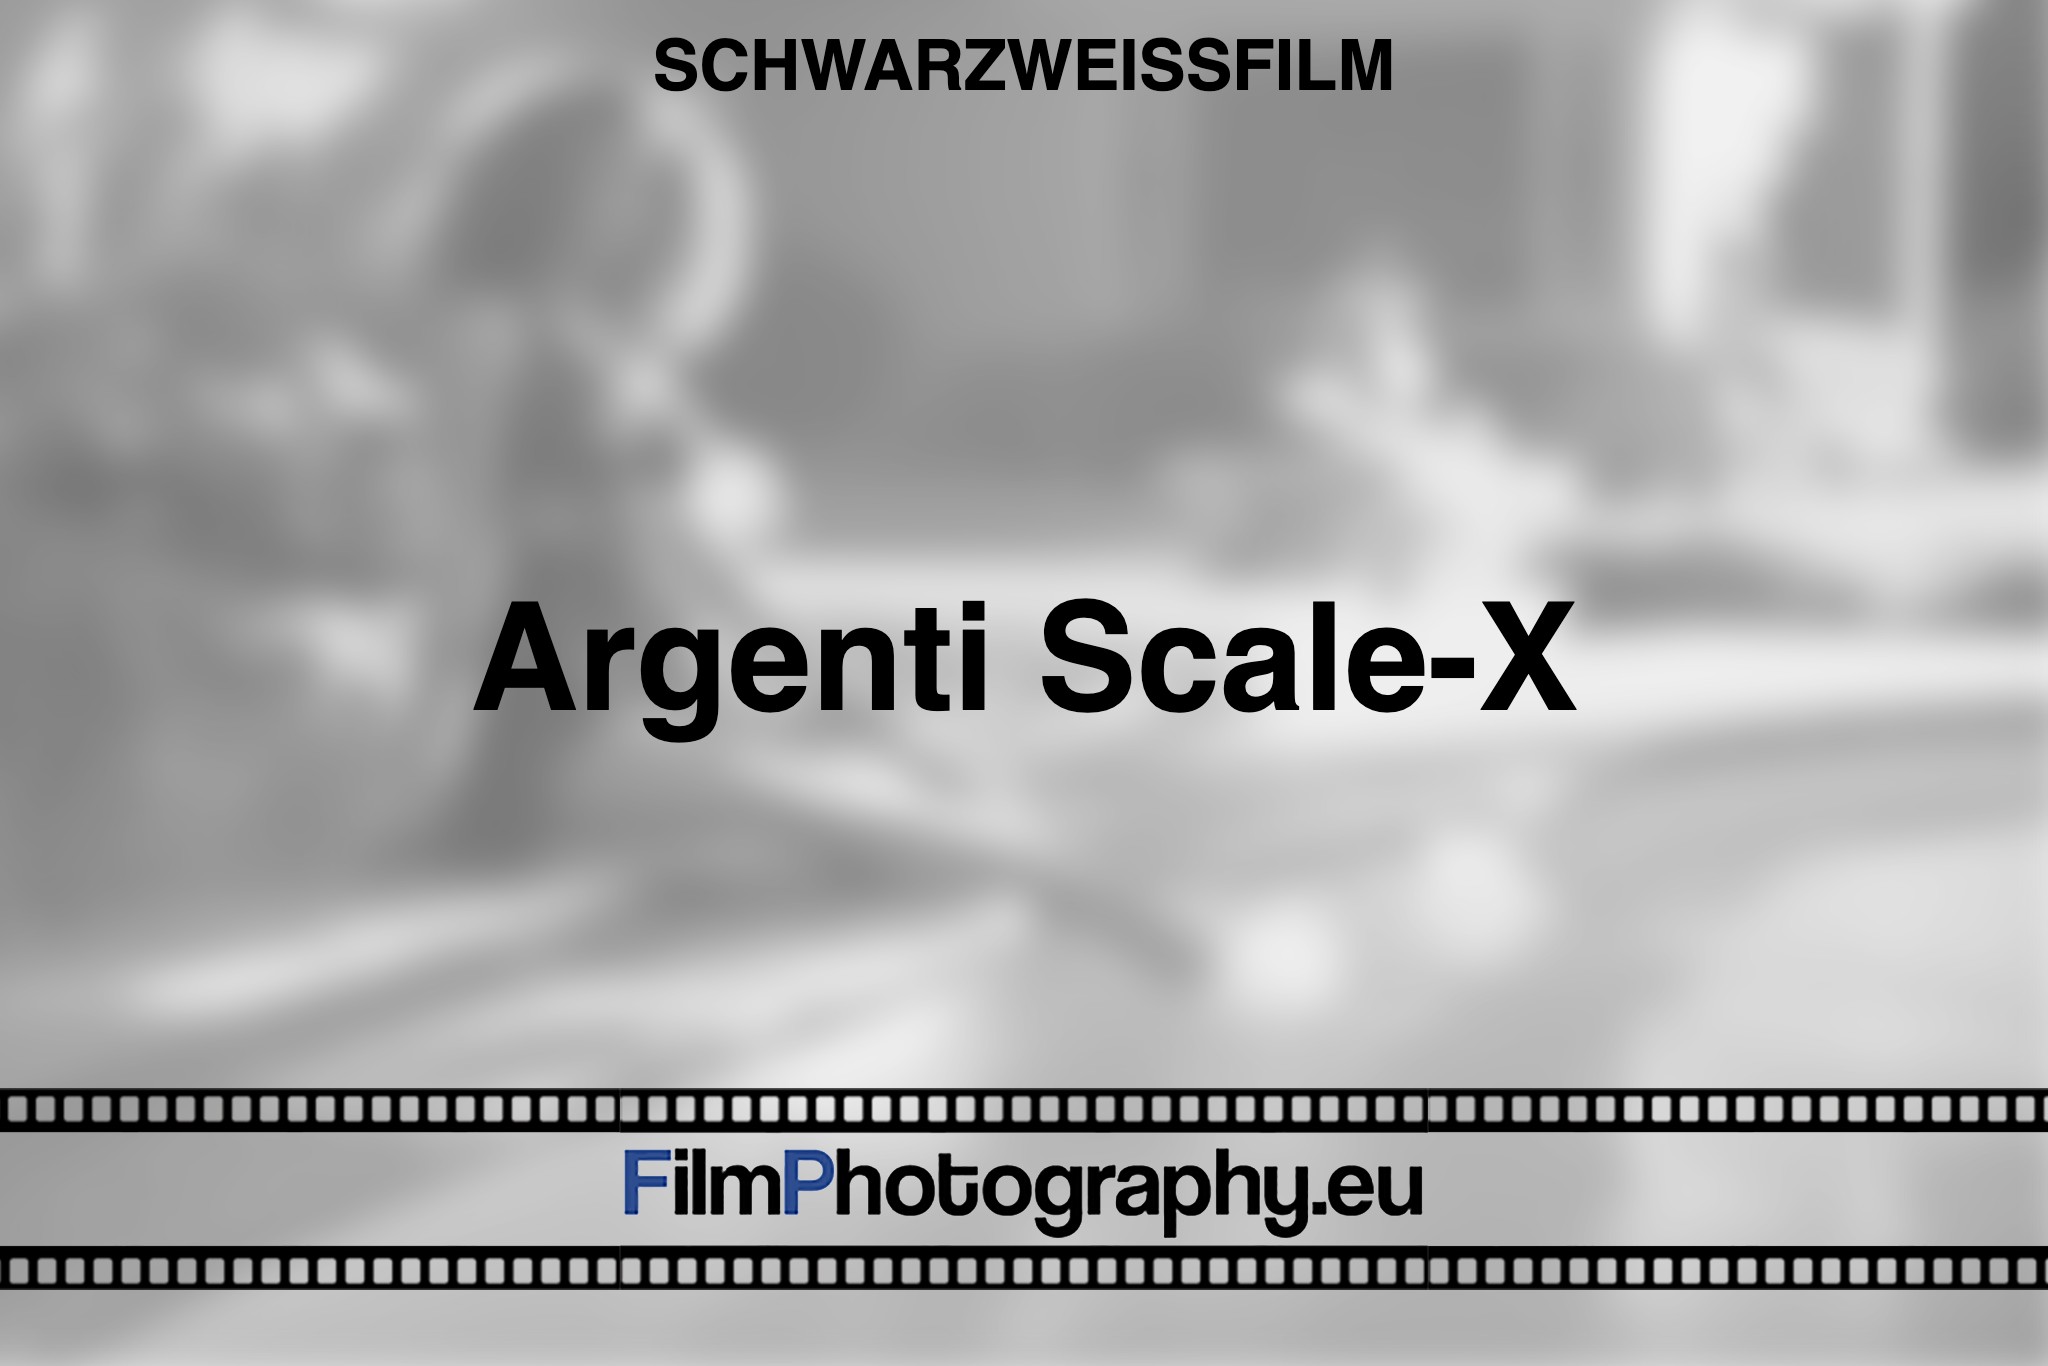 argenti-scale-x-schwarzweißfilm-bnv